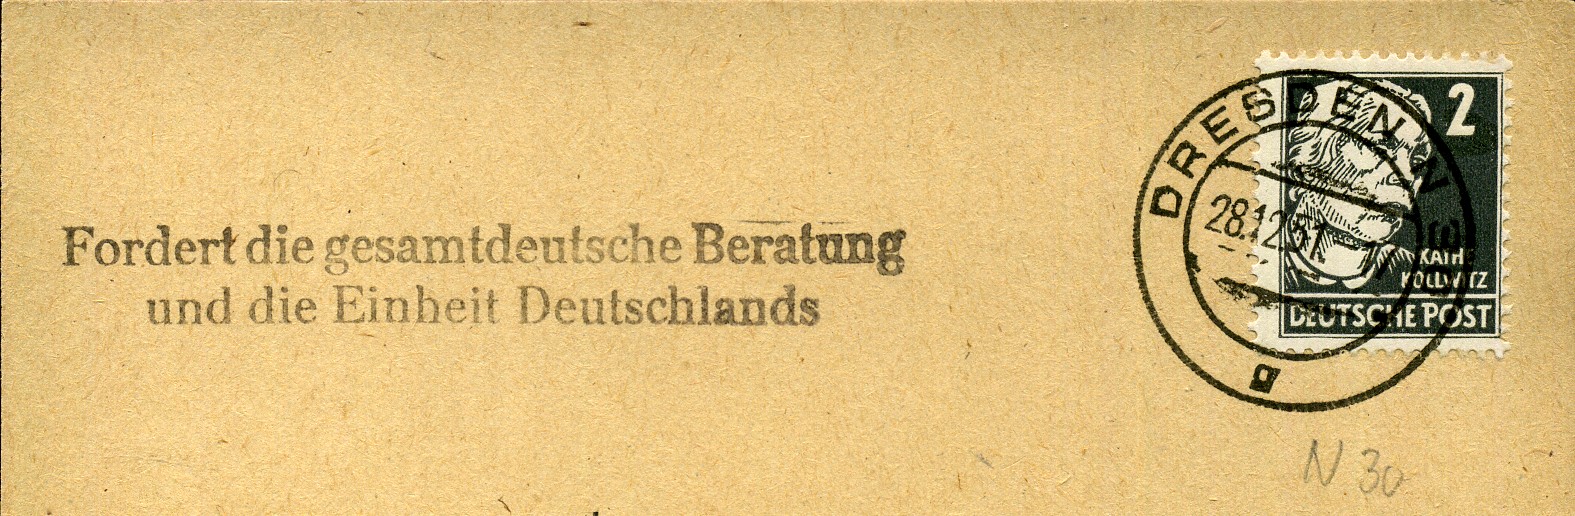 Fordert die gesamtdeutsche Beratung und die Einheit Deutschlands - Handstempel - schwarz - Dresden